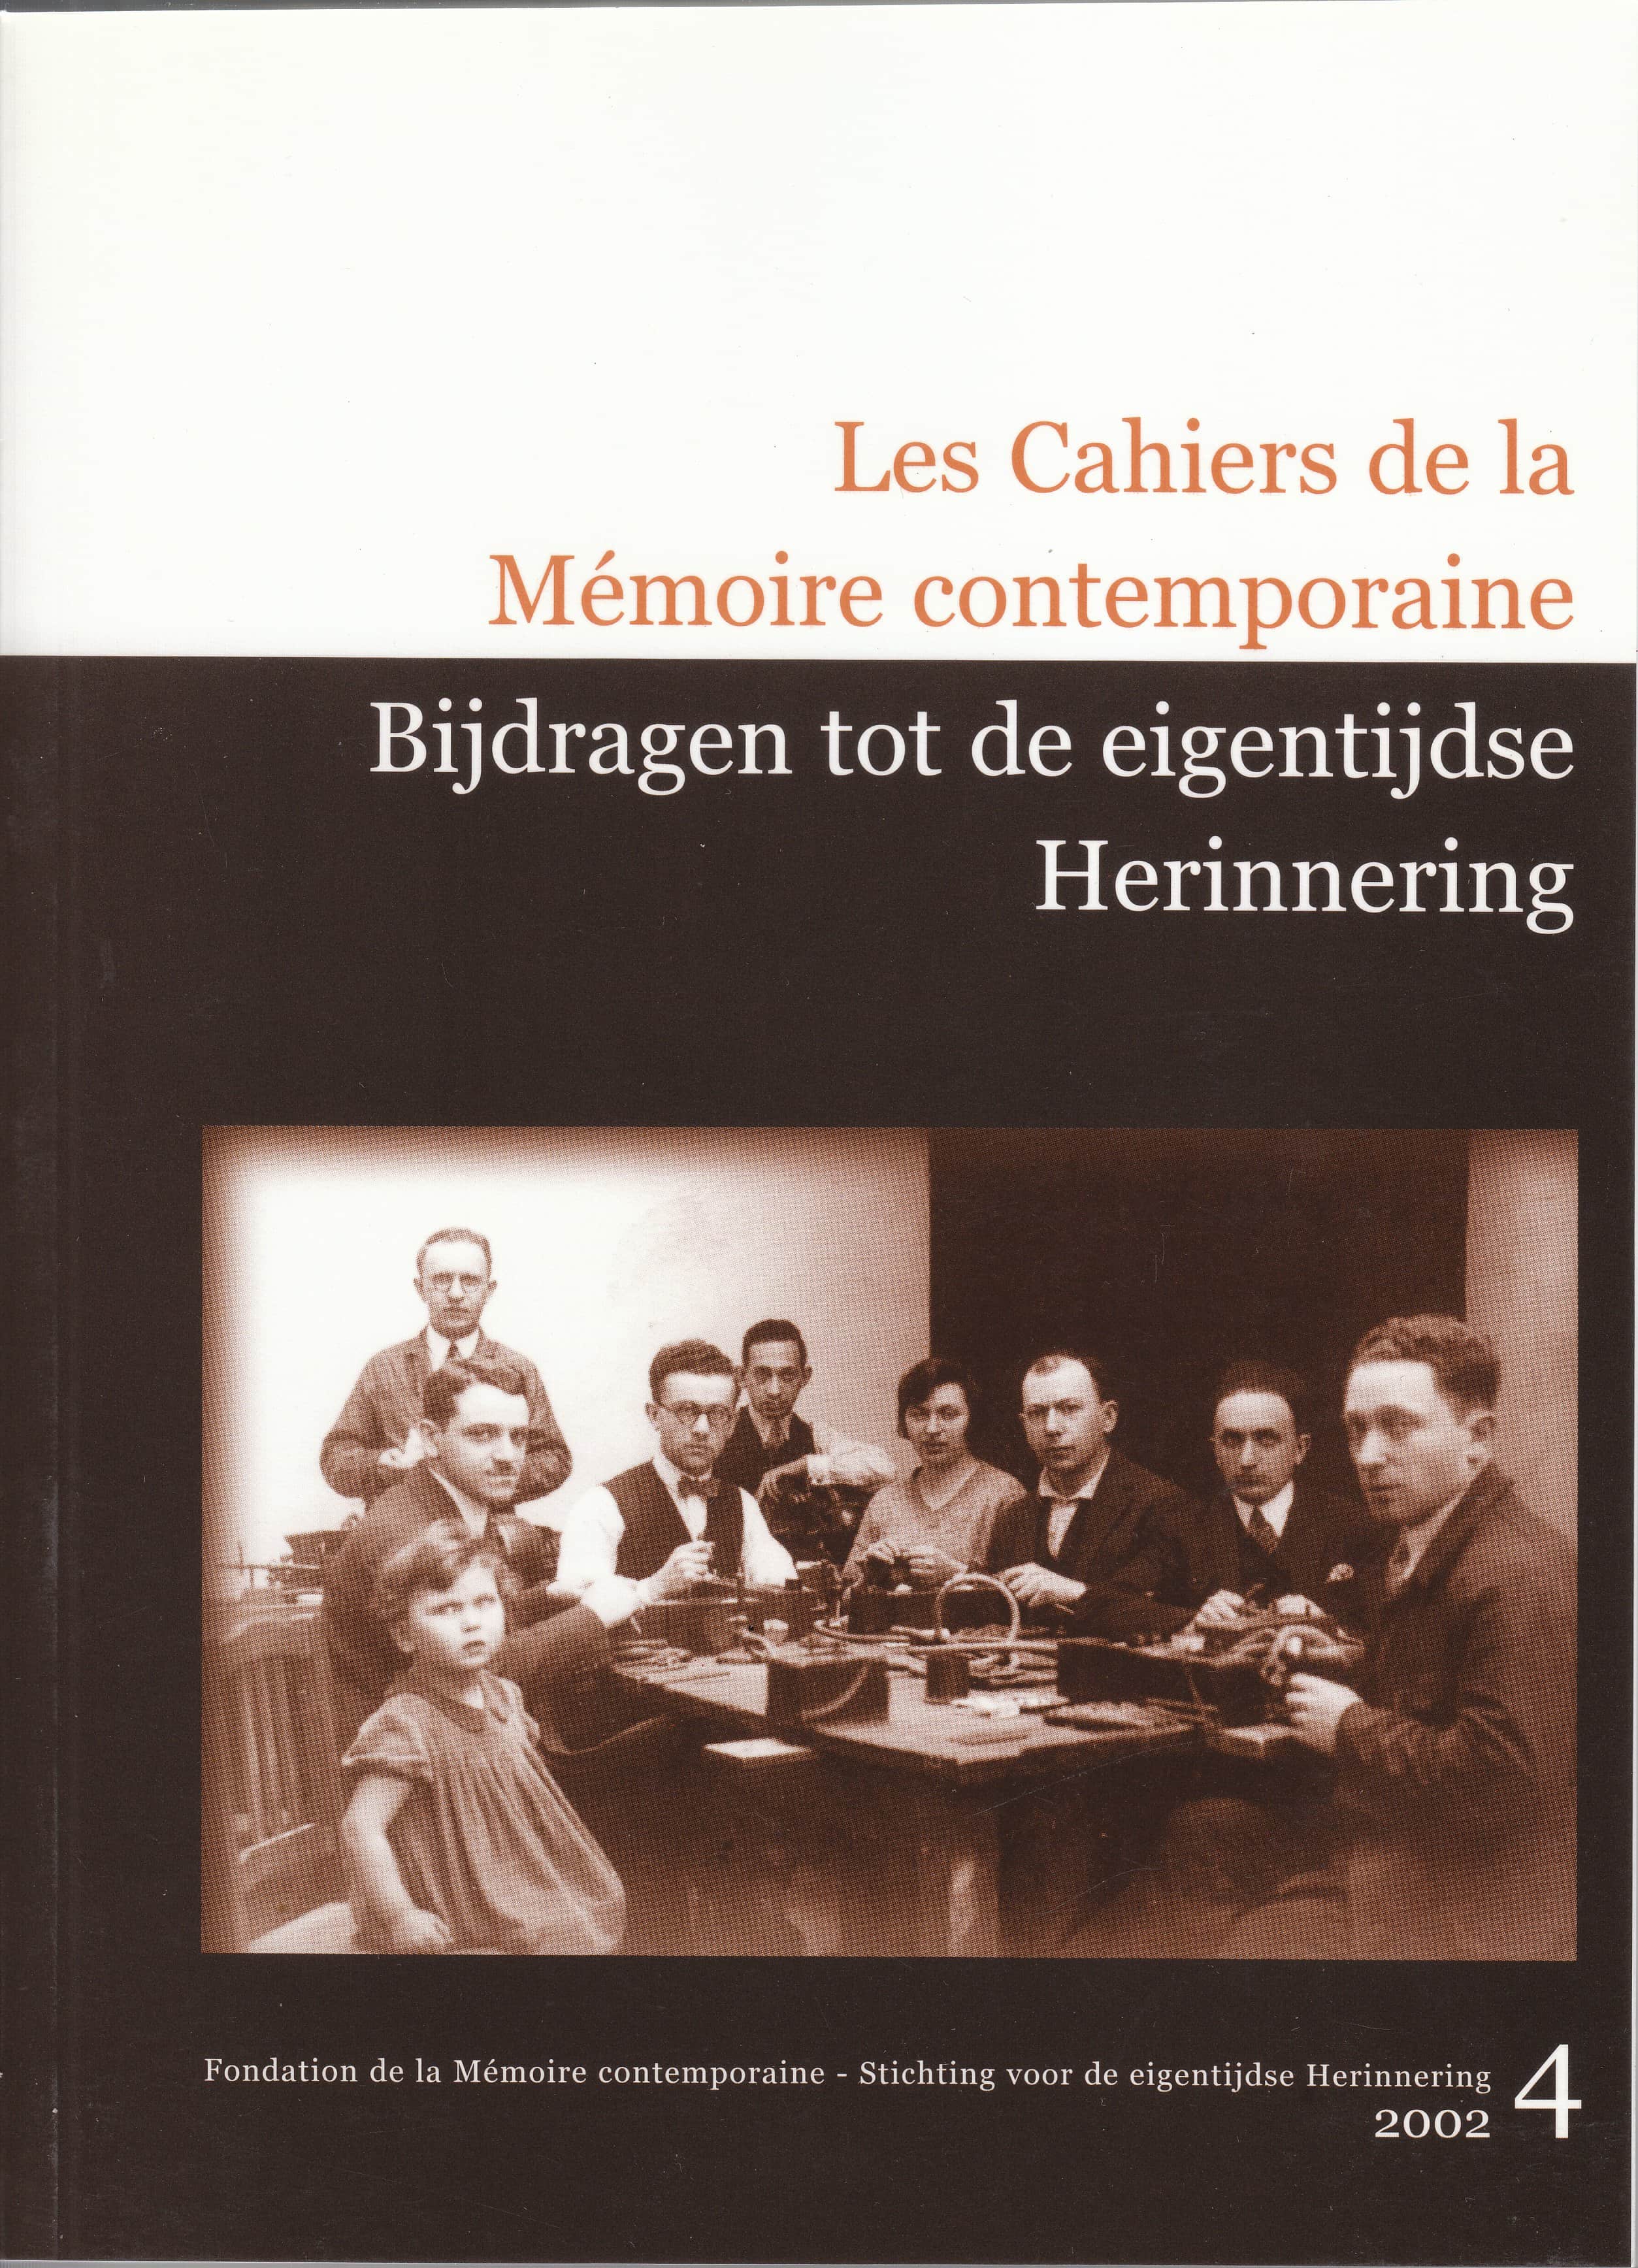 Les Cahiers de la Mémoire Contemporaine 4-2002